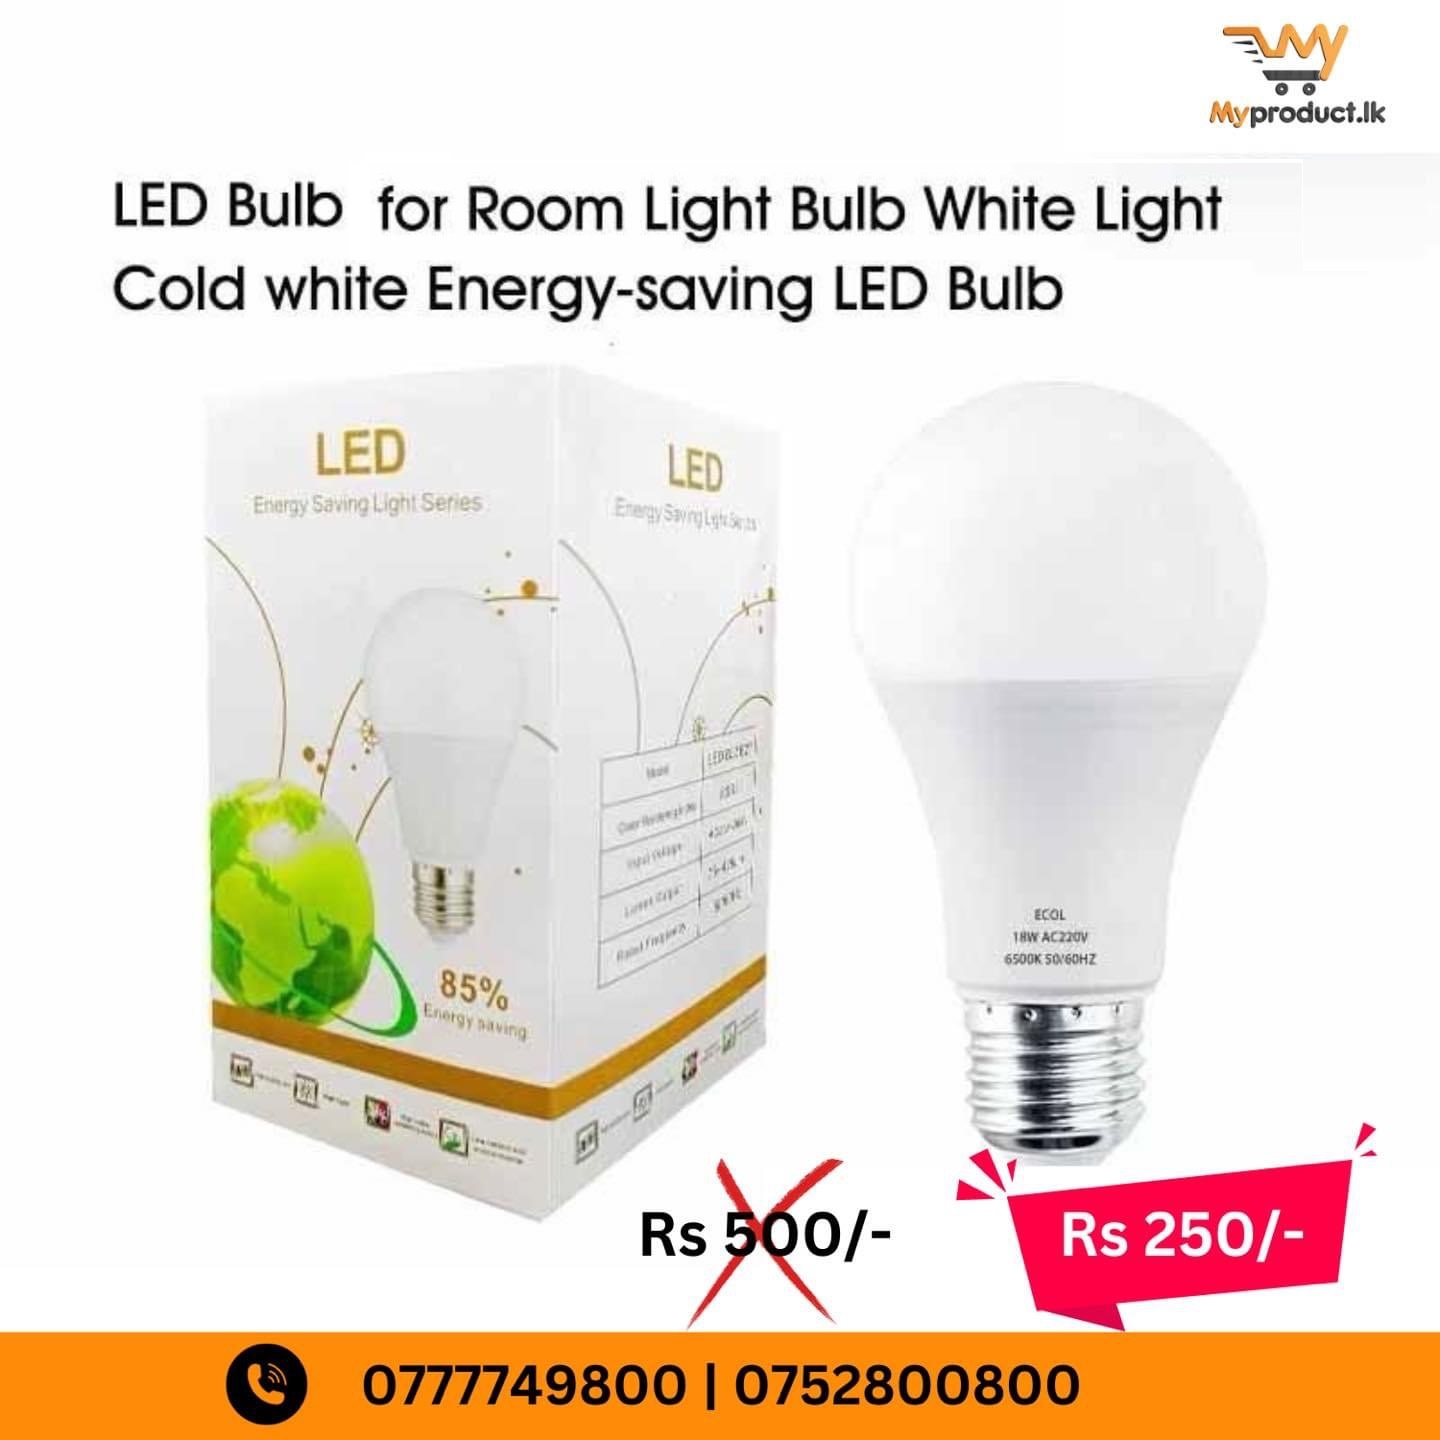 LED Bulb 12W for Room Light Bulb White Light Cold white Energy-saving LED Bulb"